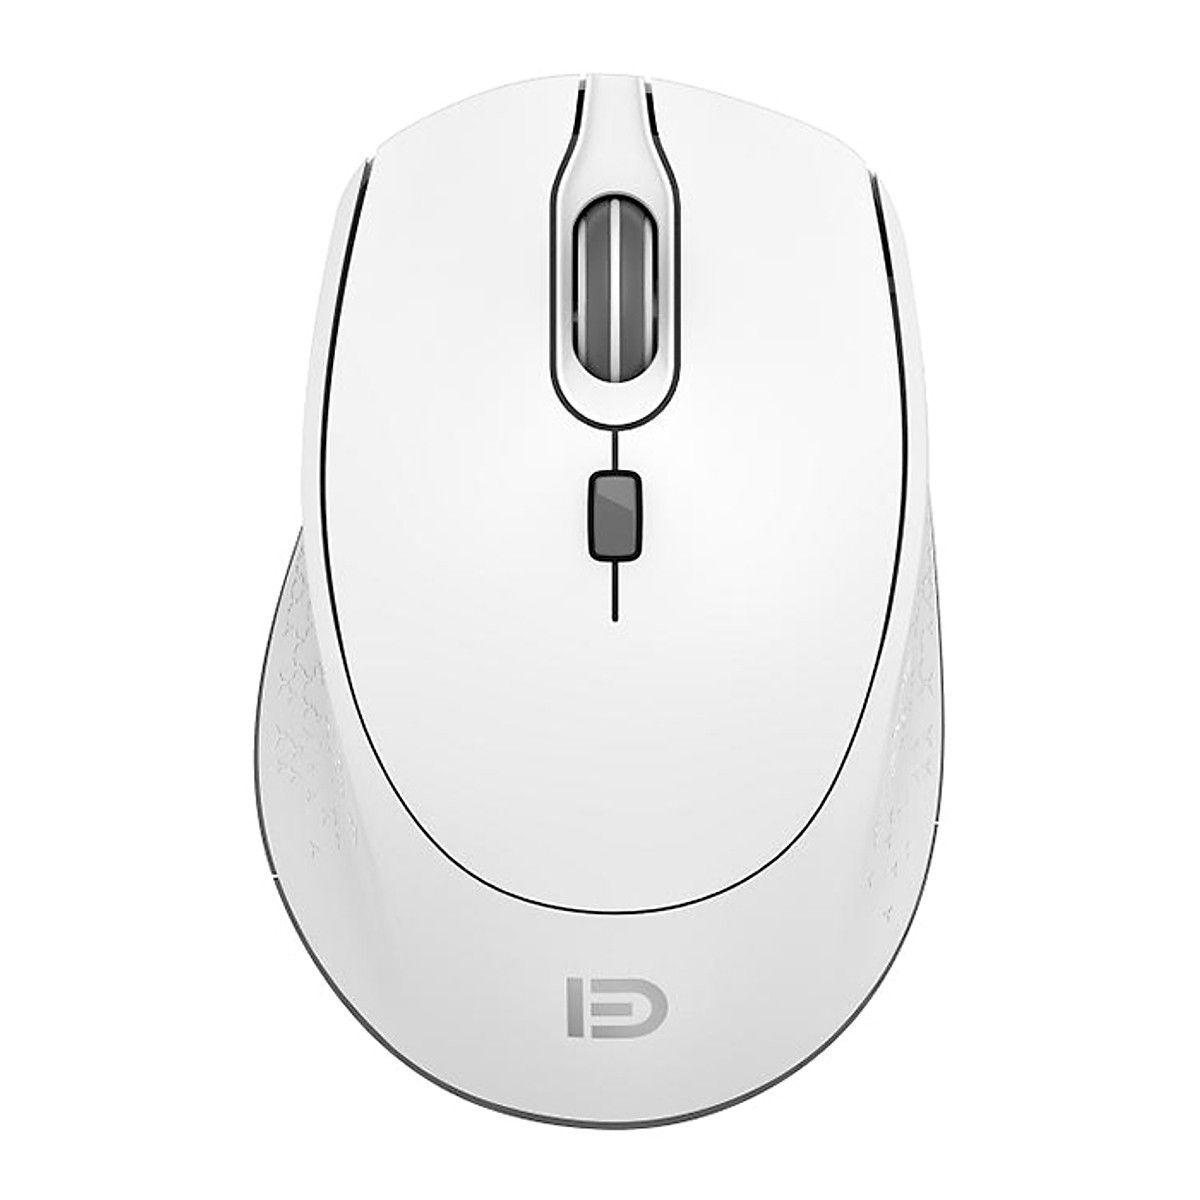 Chuột máy tính - Mouse FD I360D